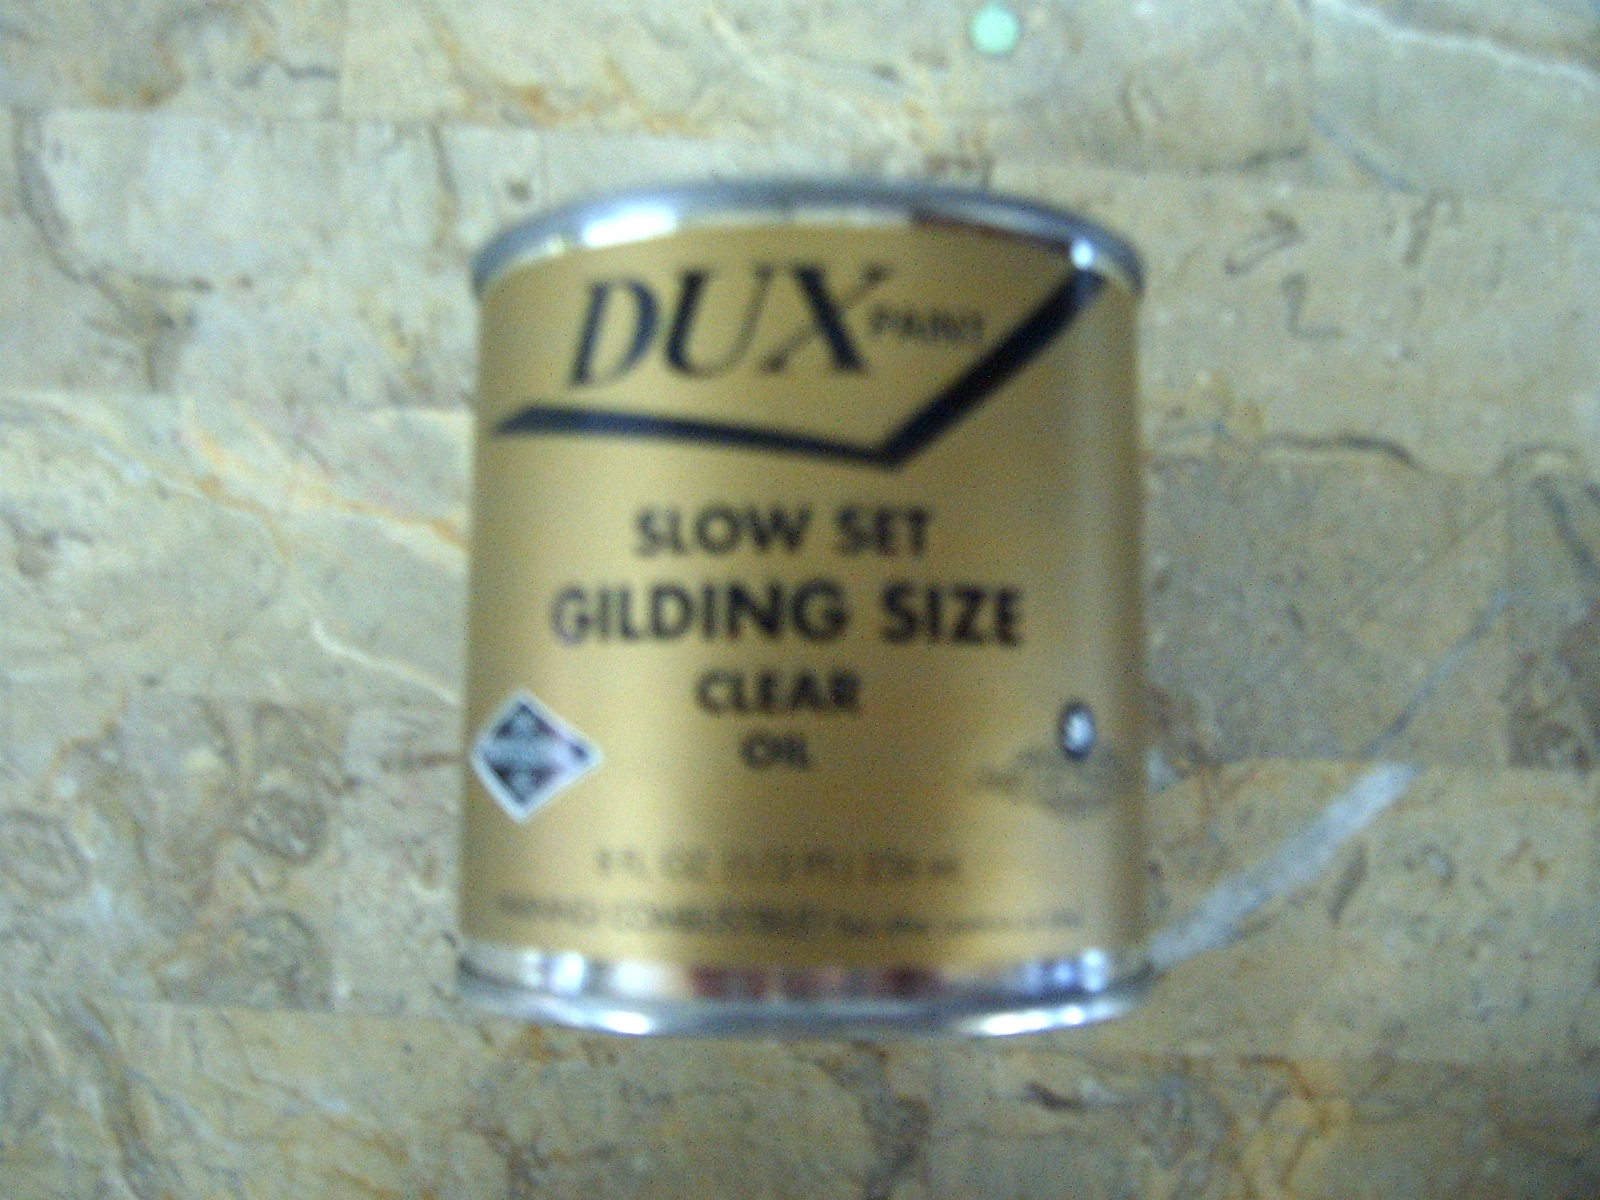 Dux Slow Set Gilding Size